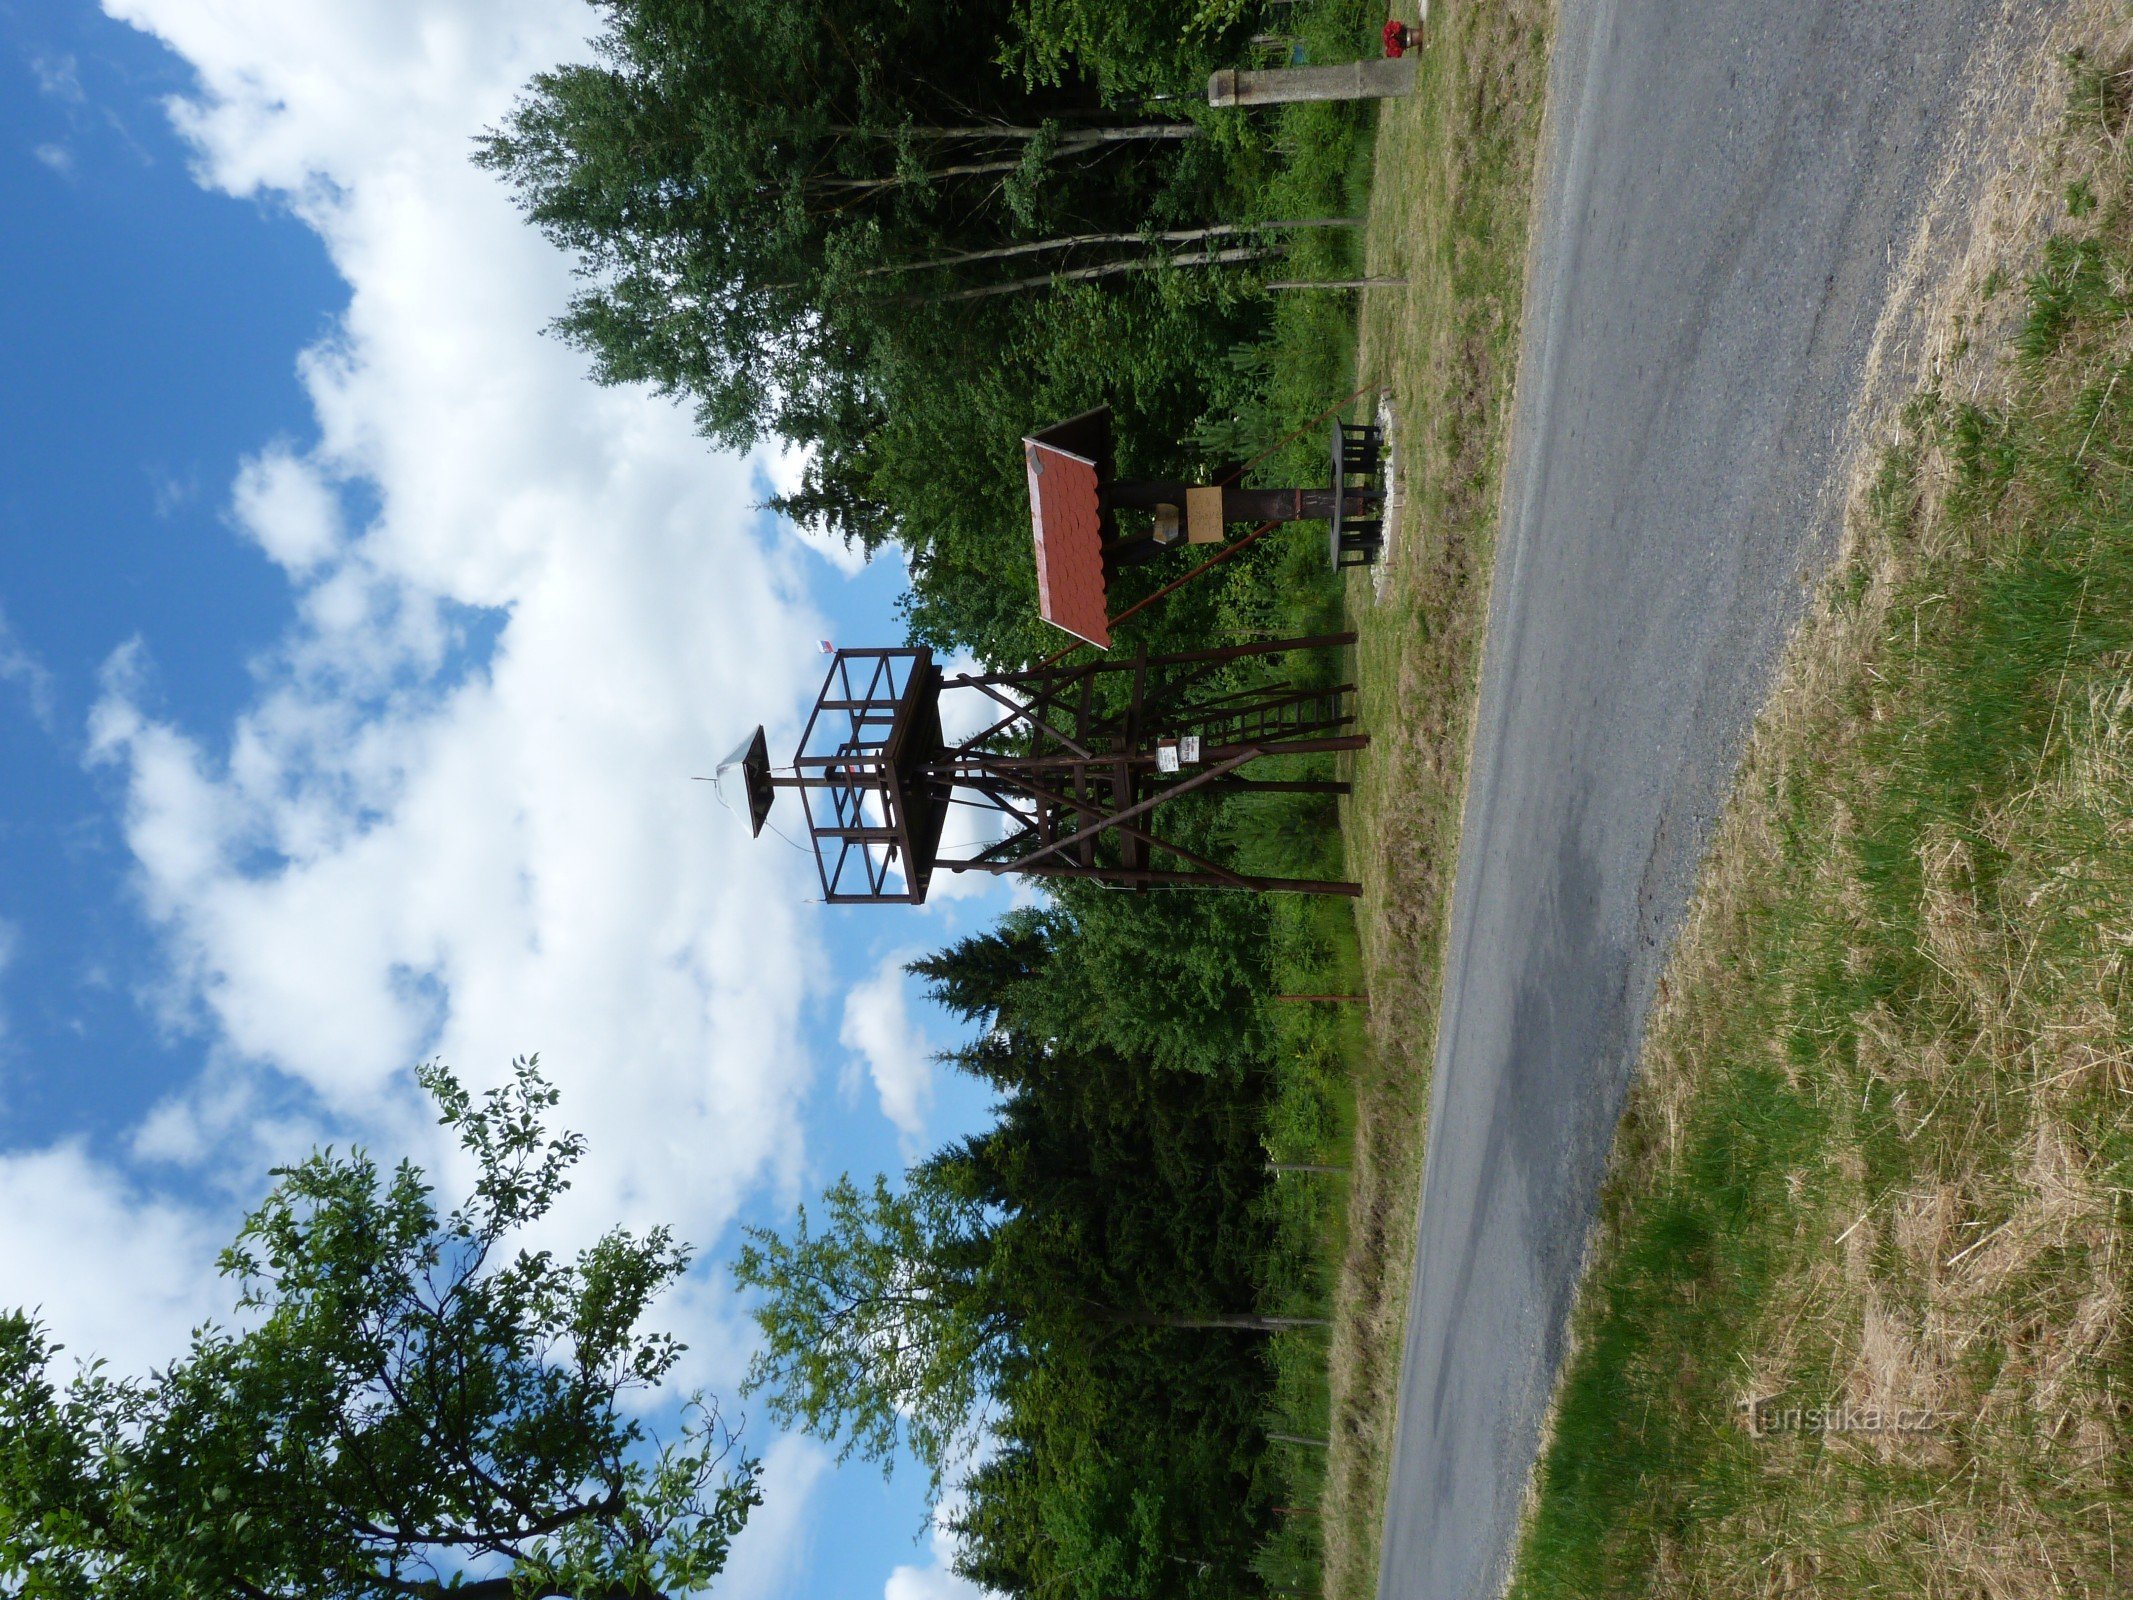 Torre de observação - Nová Ves perto de Kdyně